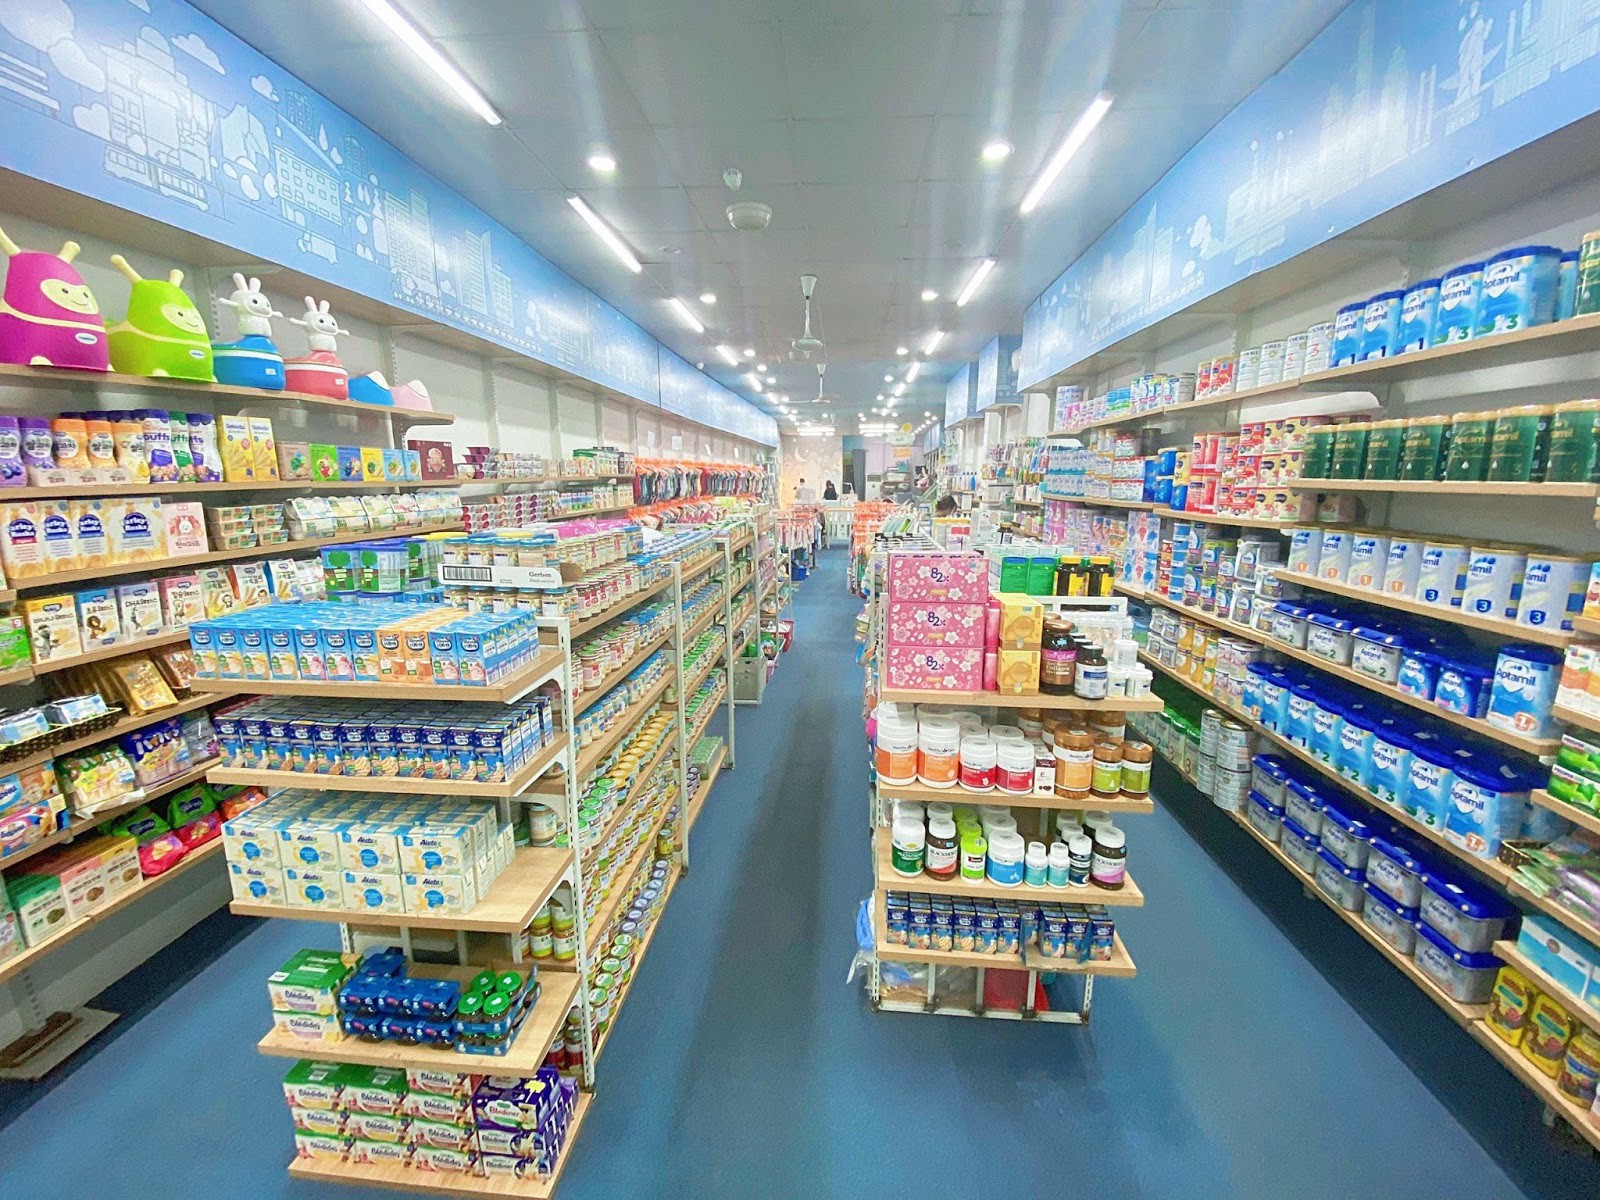 Nana’s House chuyển mình mạnh mẽ từ siêu thị bỉm sữa sang hệ thống siêu thị ngoại nhập - Ảnh 2.